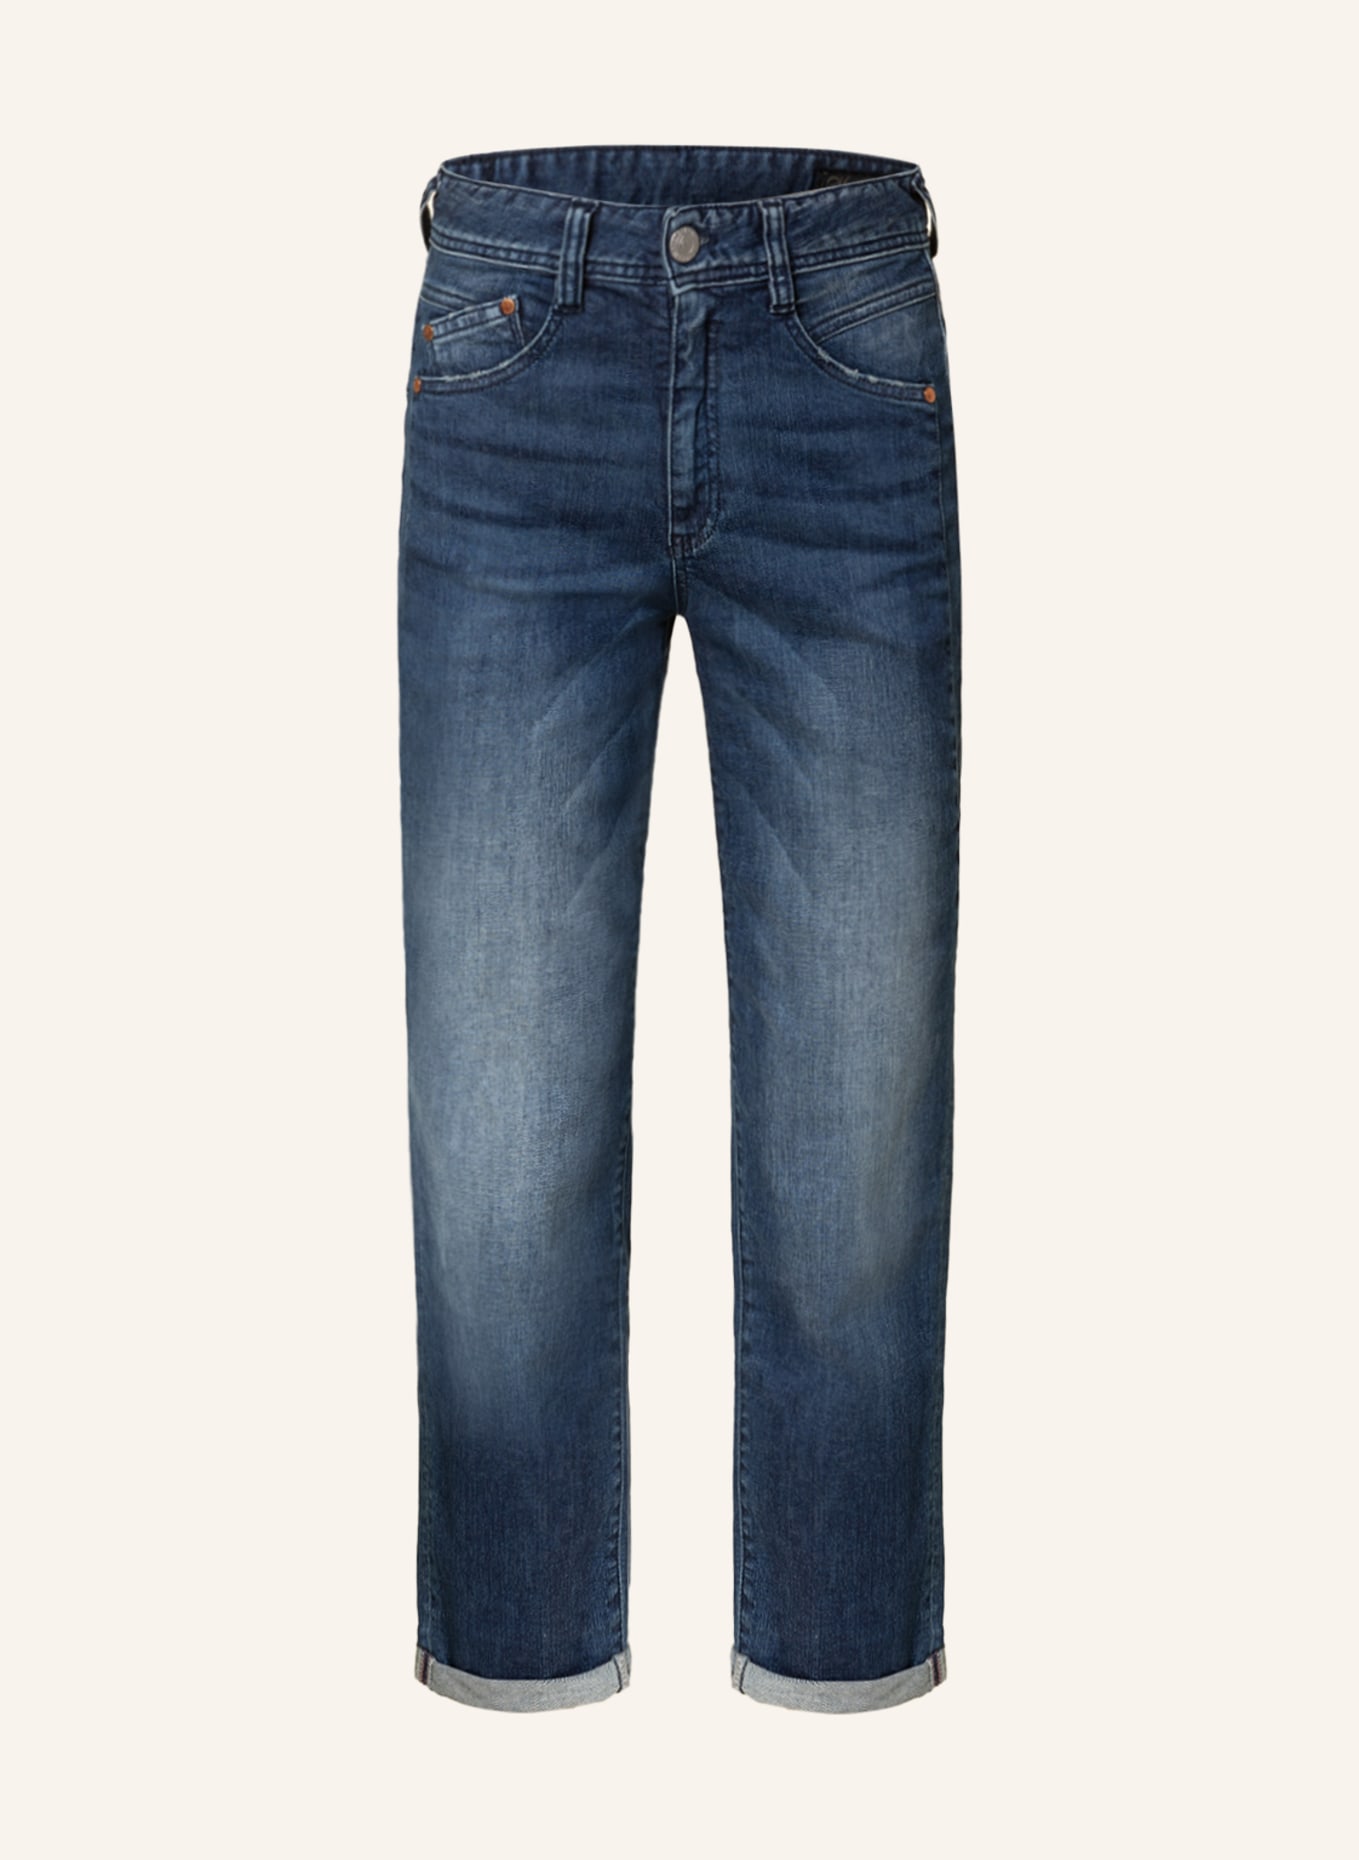 Herrlicher Straight Jeans GILA , Farbe: 603 blue core (Bild 1)